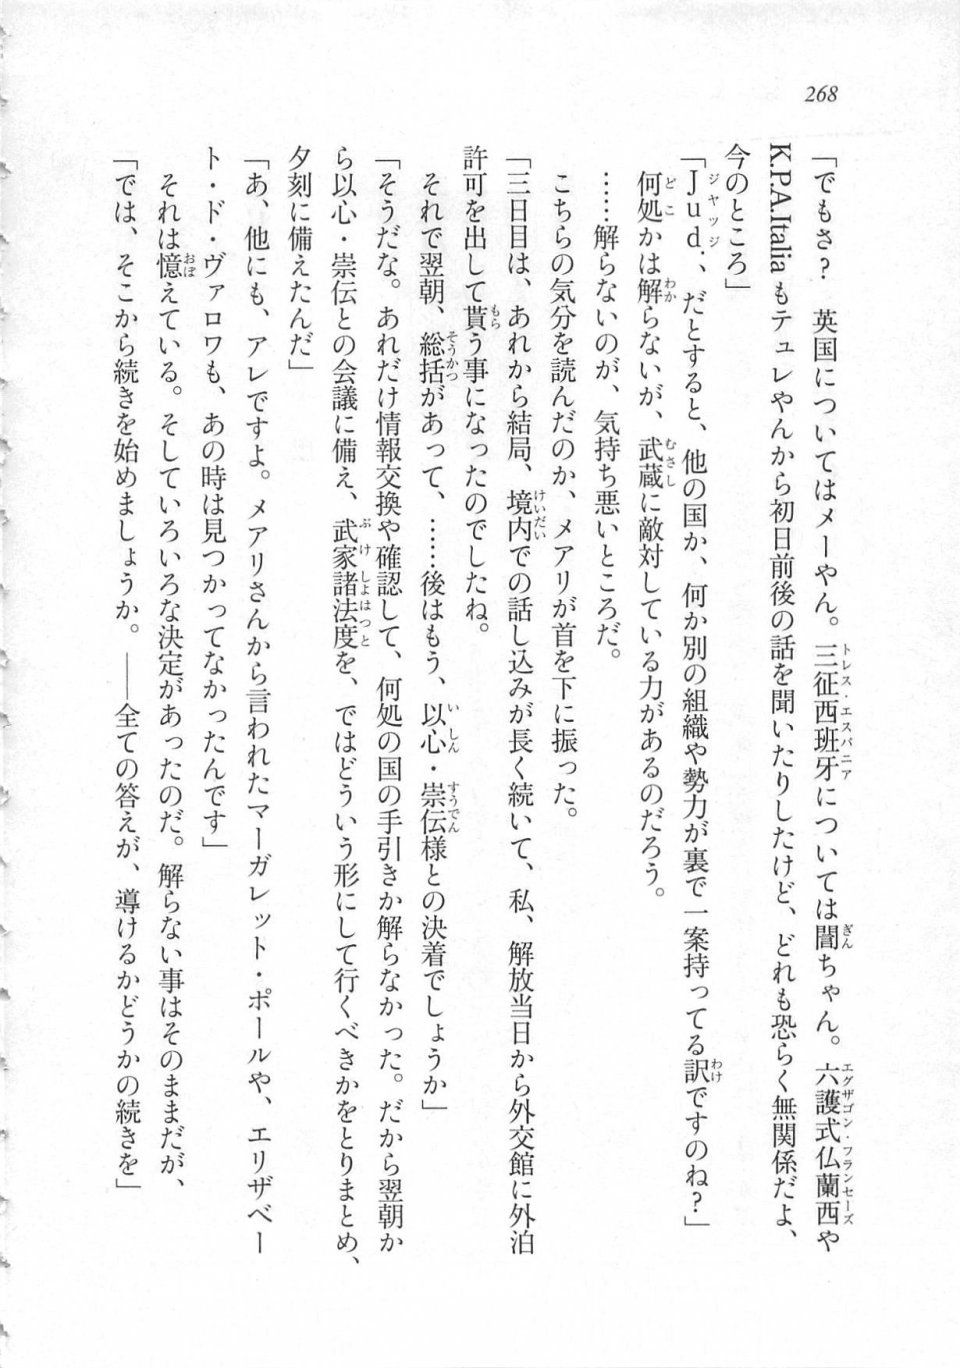 Kyoukai Senjou no Horizon LN Sidestory Vol 3 - Photo #272